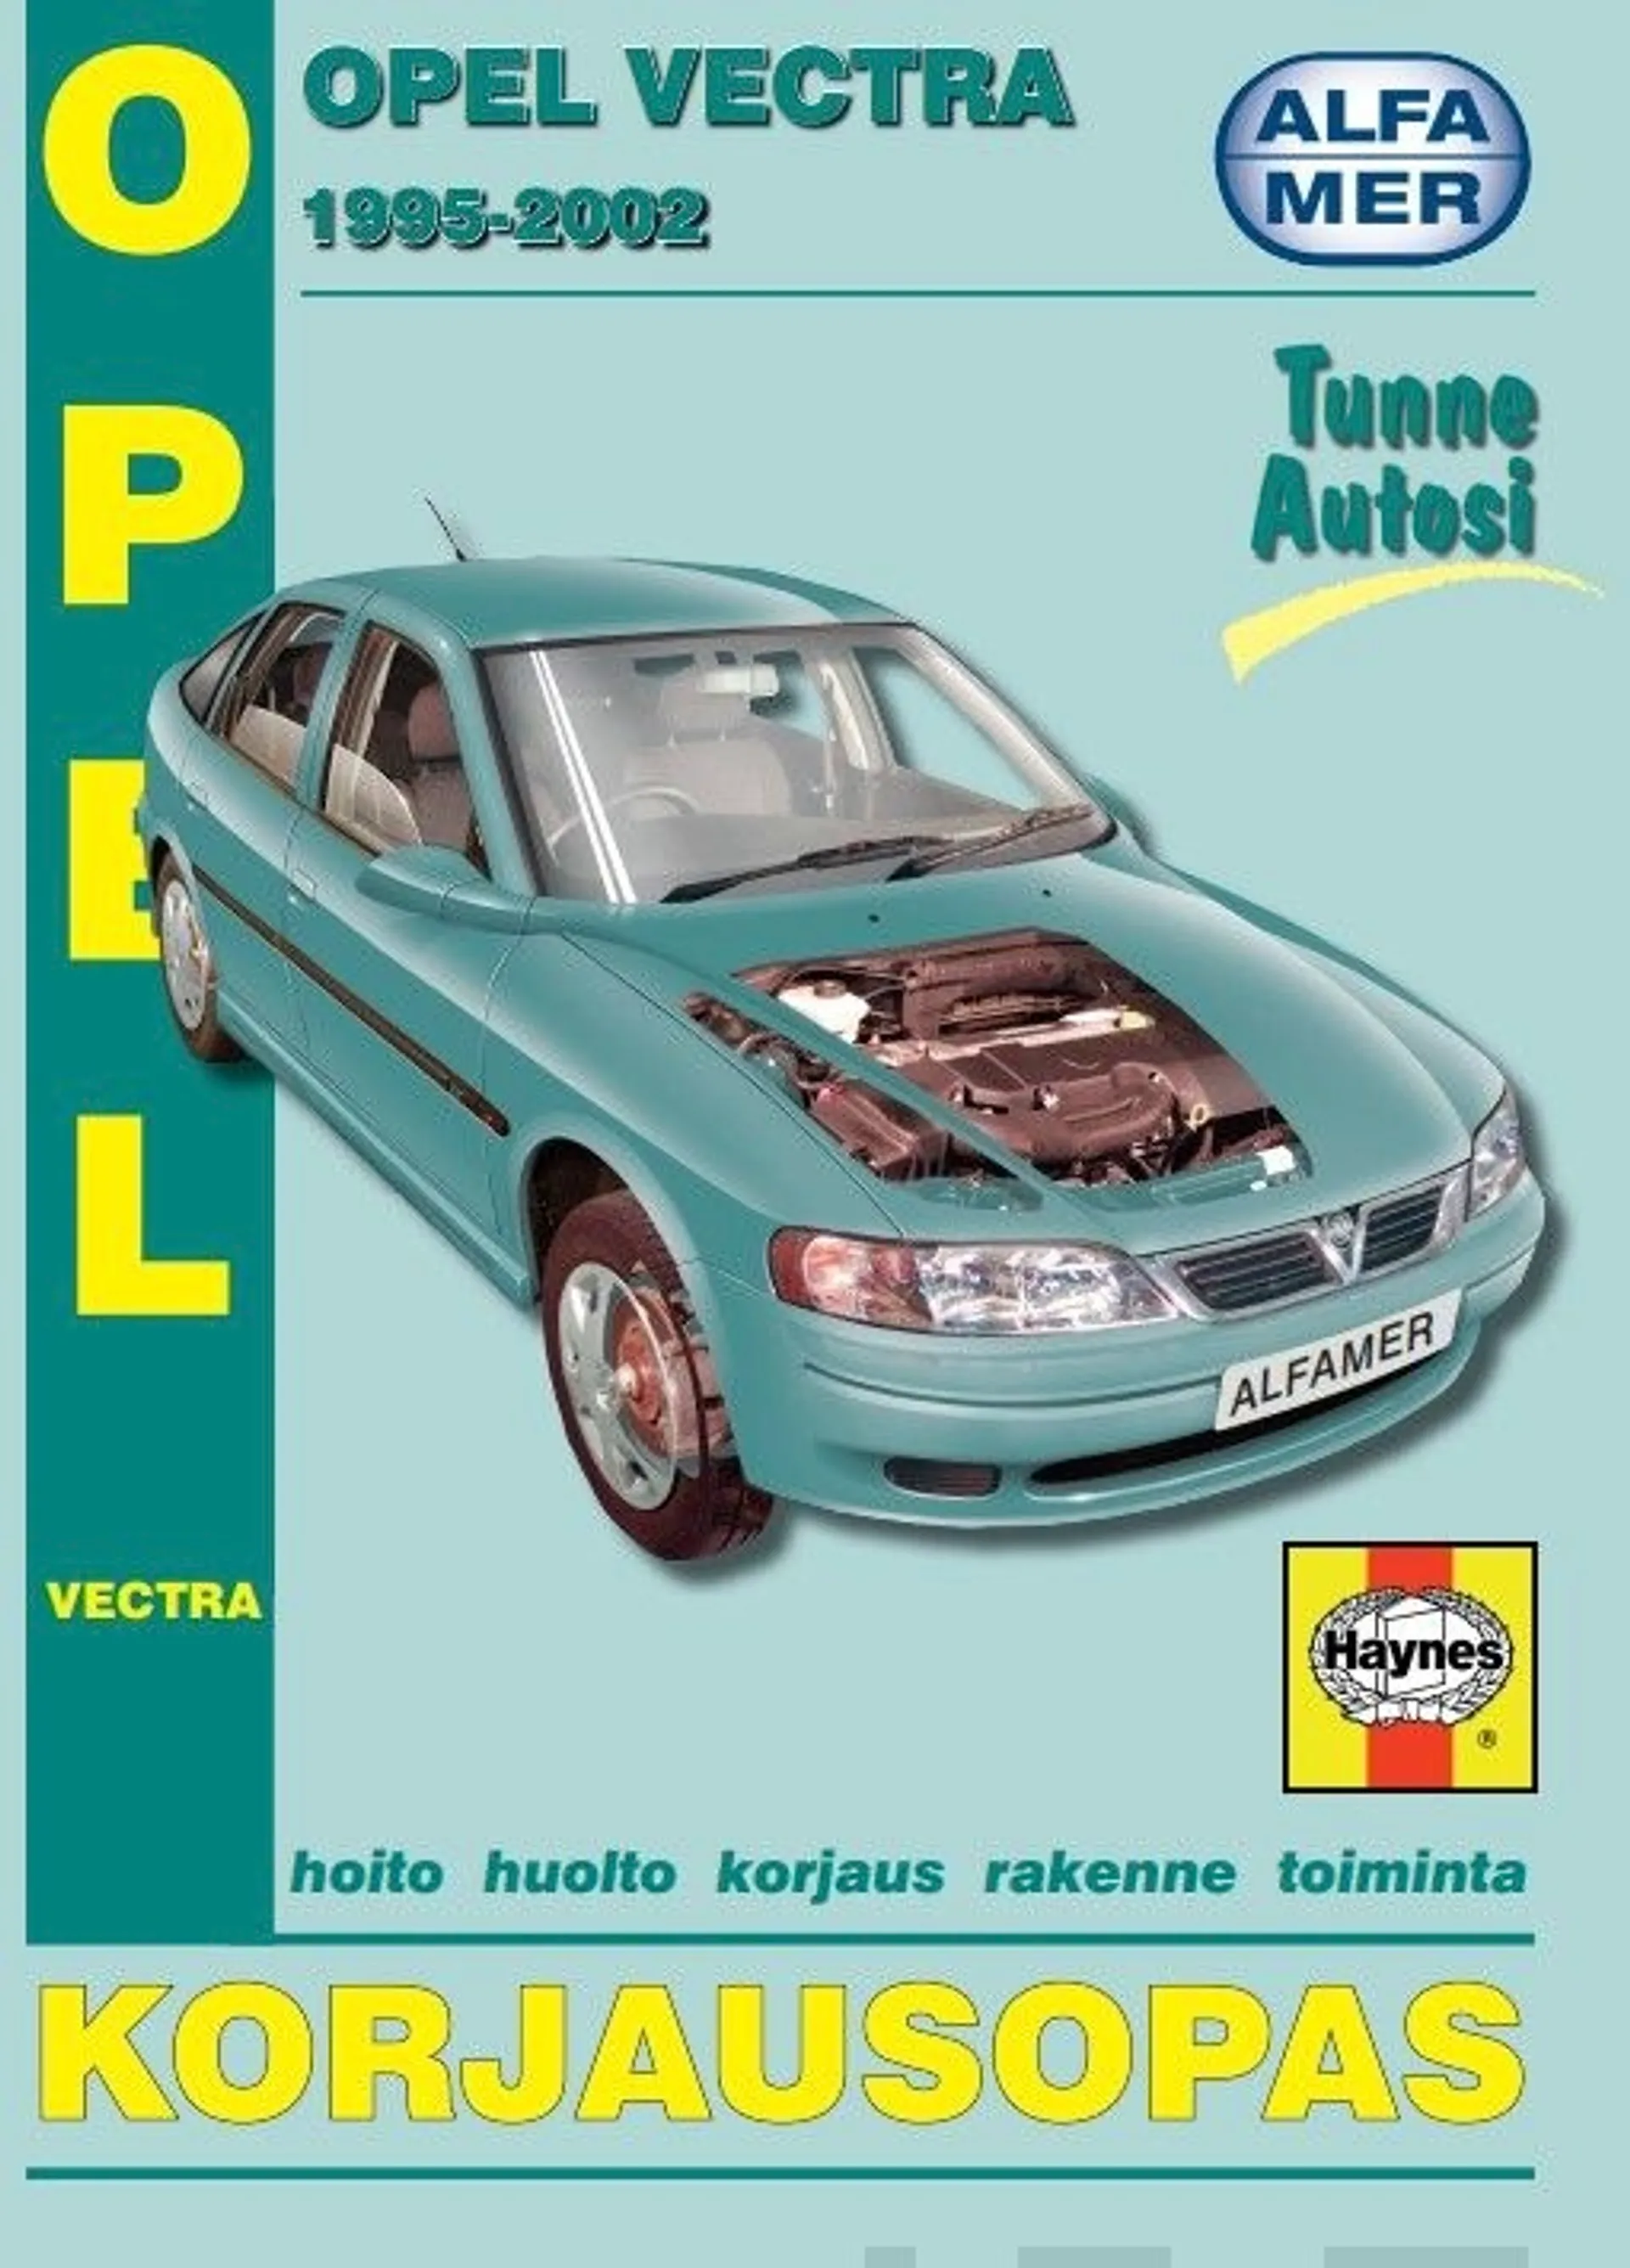 Opel Vectra 1995-2002